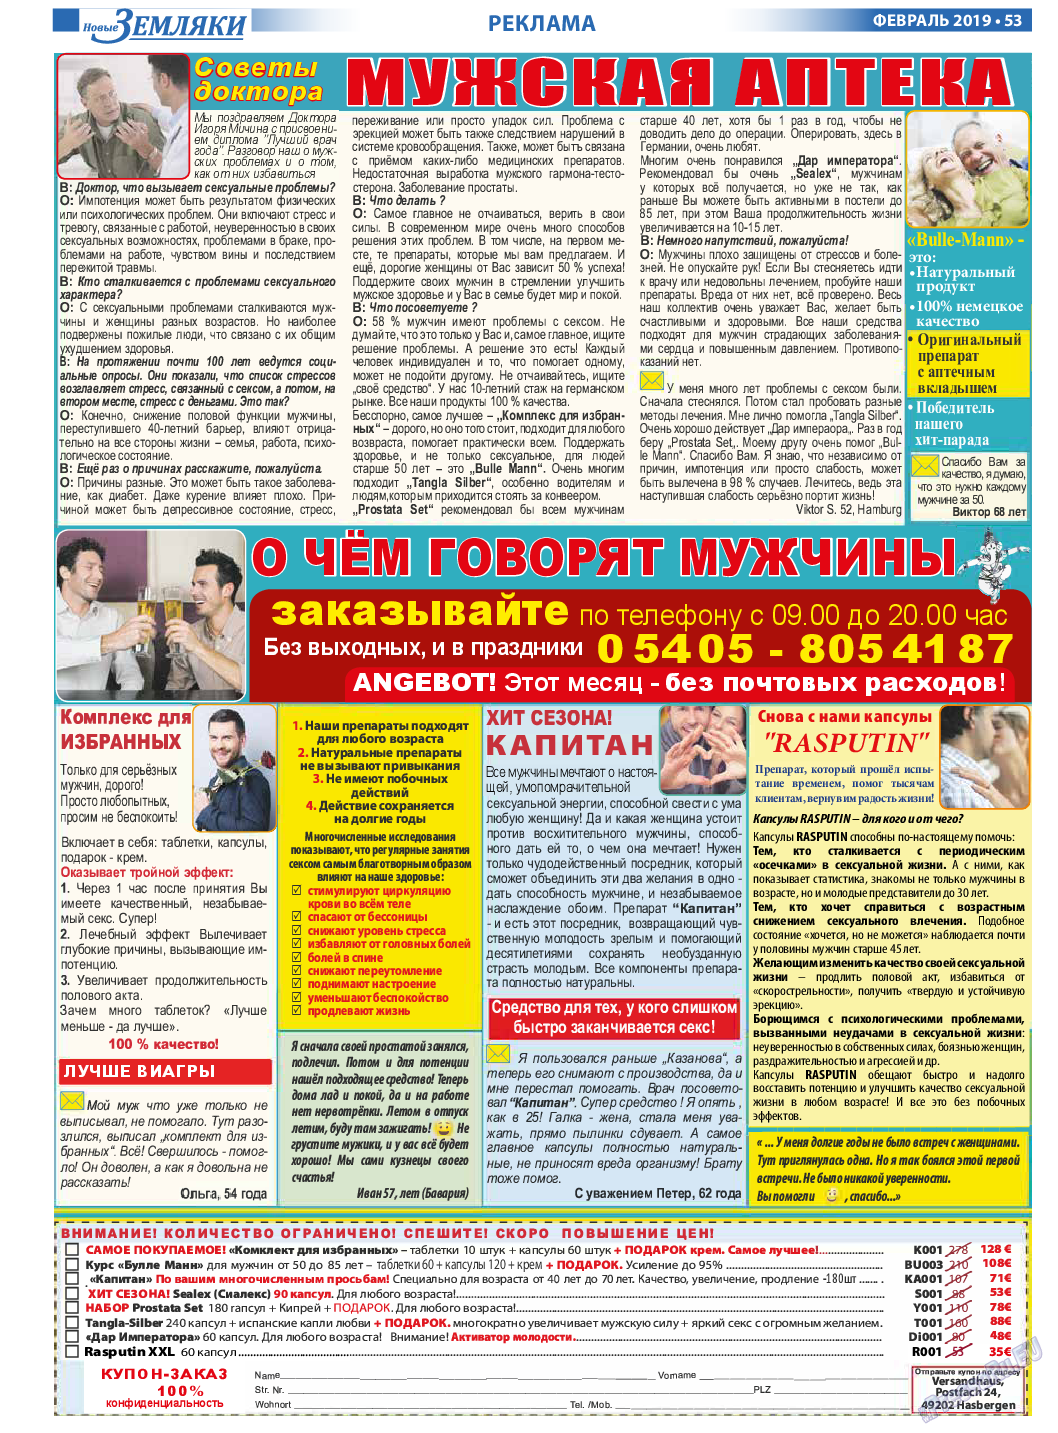 Новые Земляки (газета). 2019 год, номер 2, стр. 53